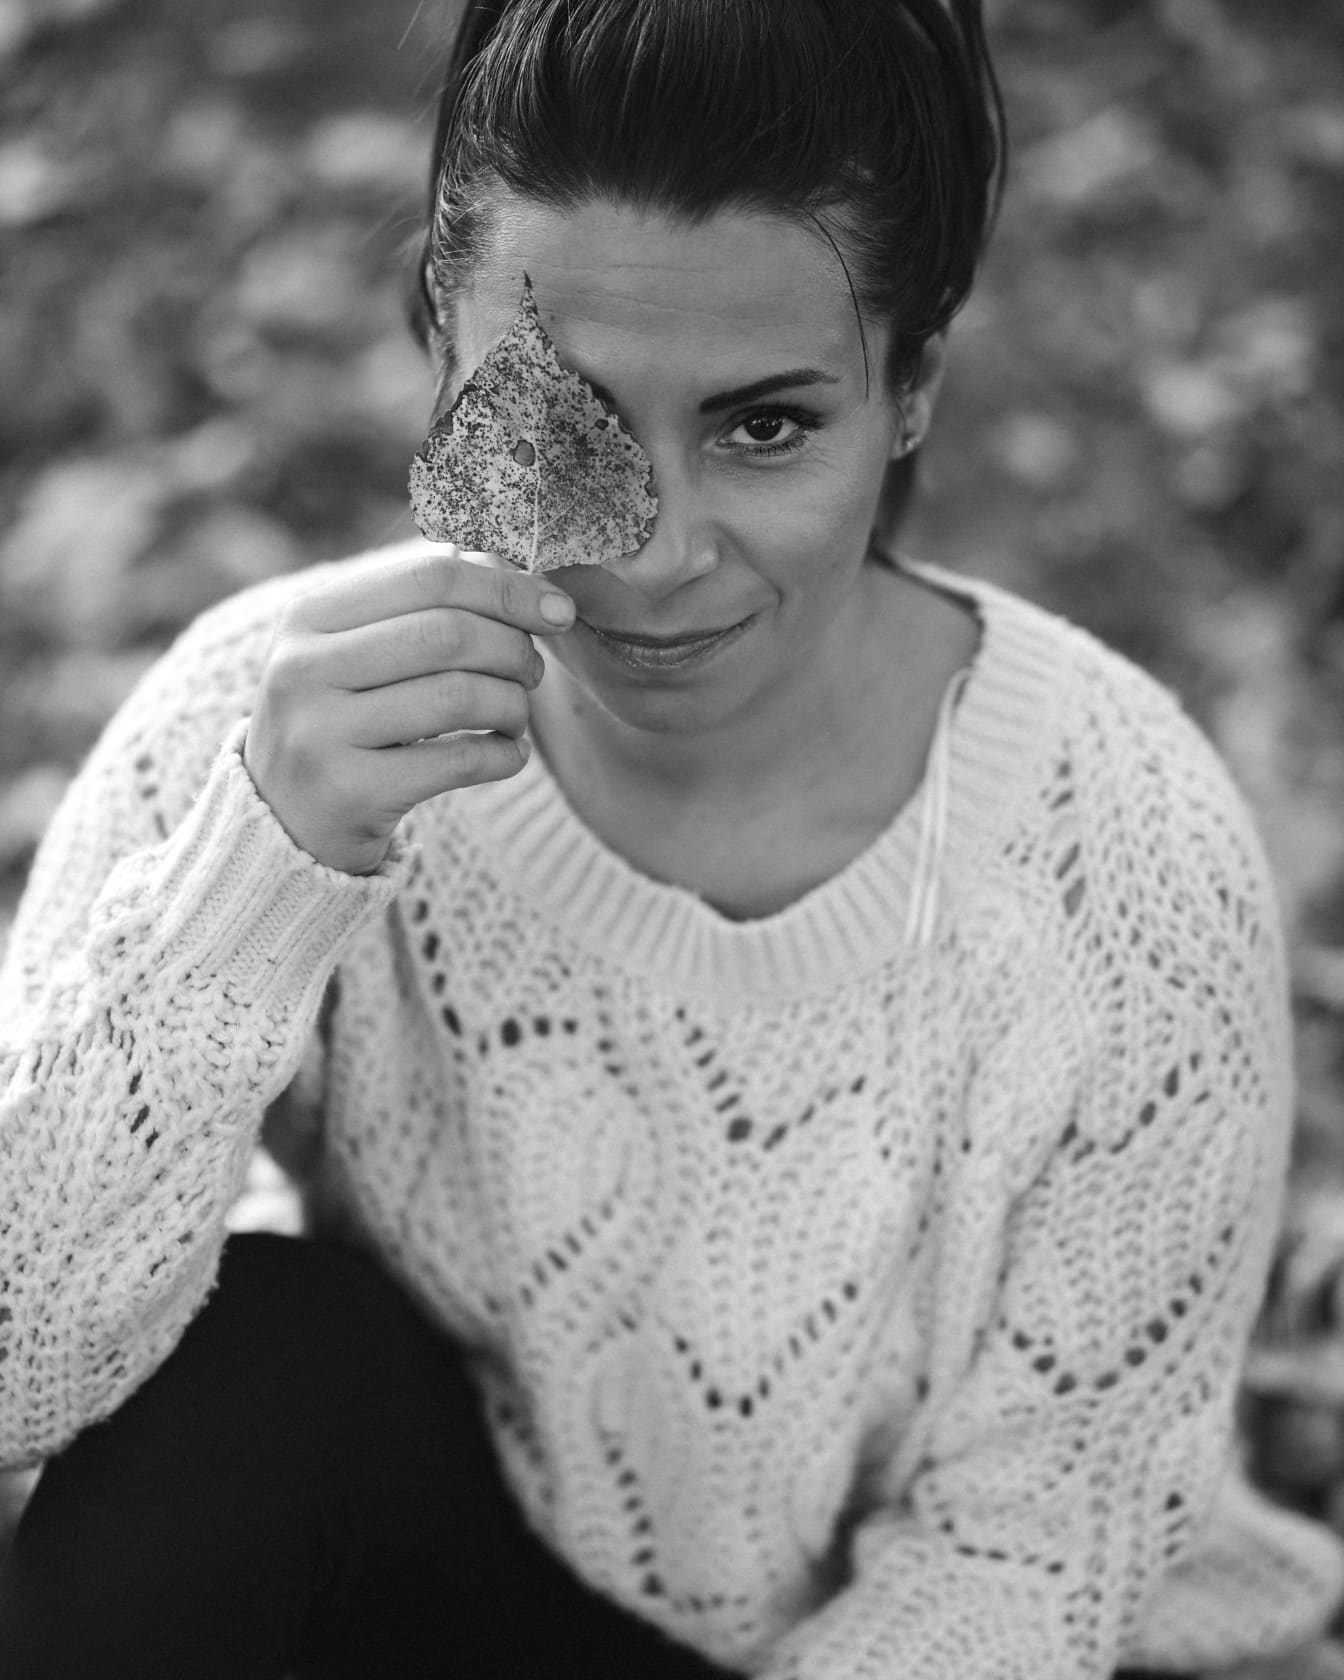 Woman holding leaf on face monochrome portrait